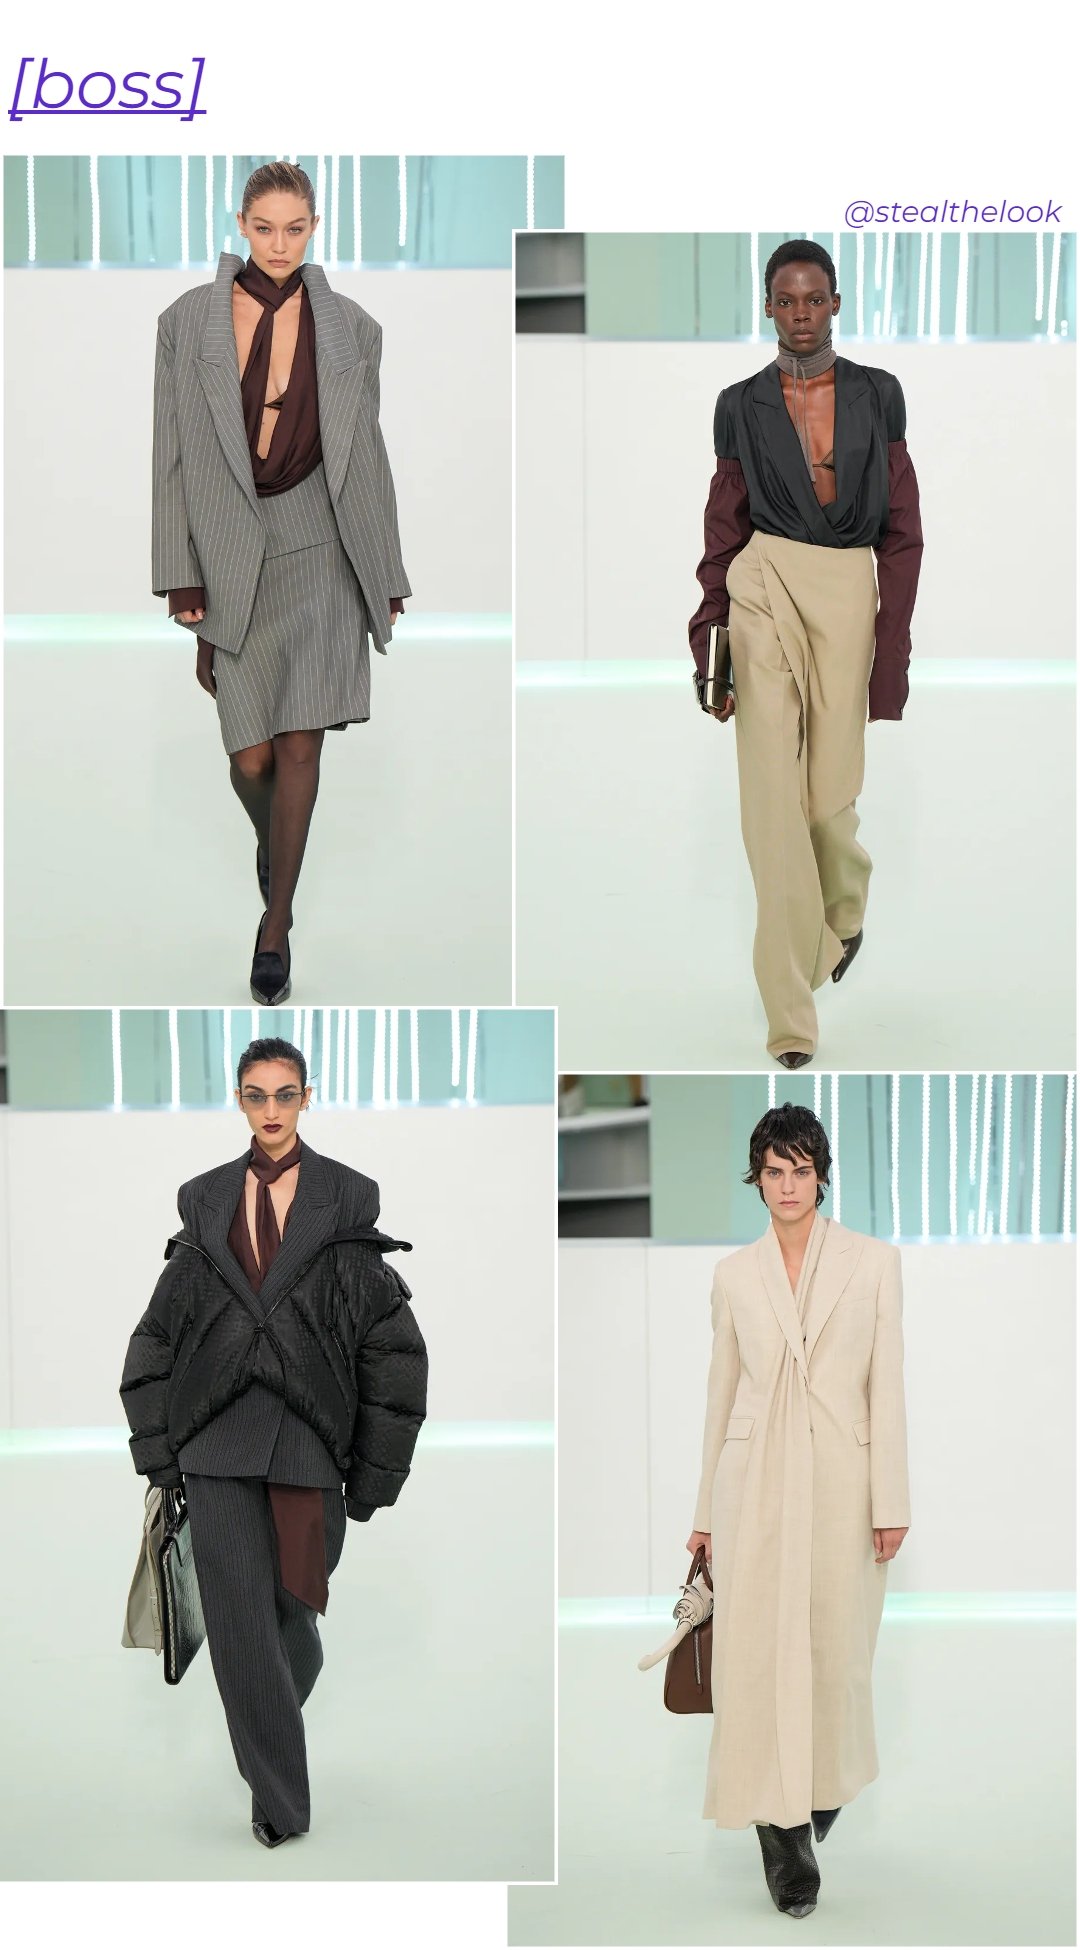 BOSS - roupas diversas - Milano Fashion Week - outono - colagem de imagens - https://stealthelook.com.br